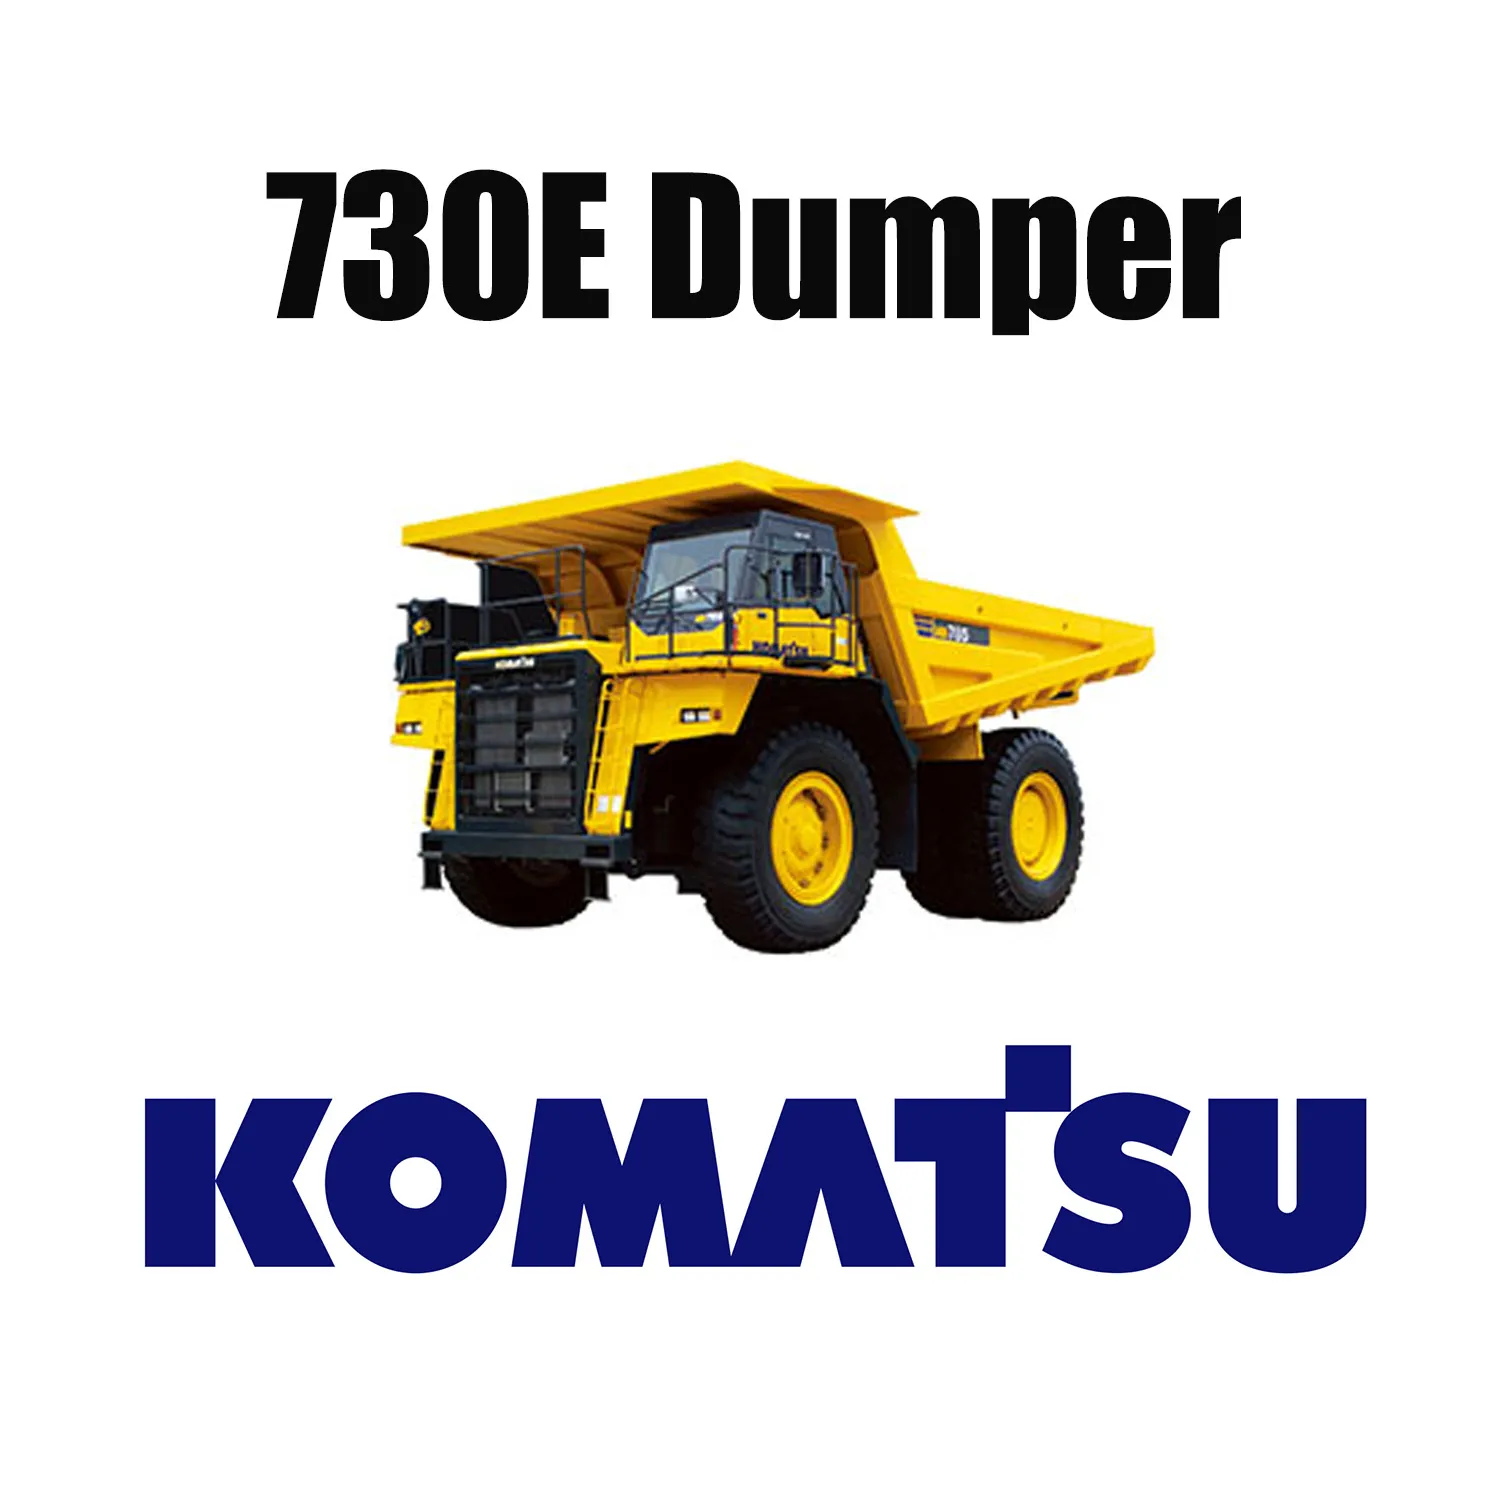 KOMATSU 730E-vrachtwagens uitgerust met gigantische 37.00R57 OTR-mijnbanden